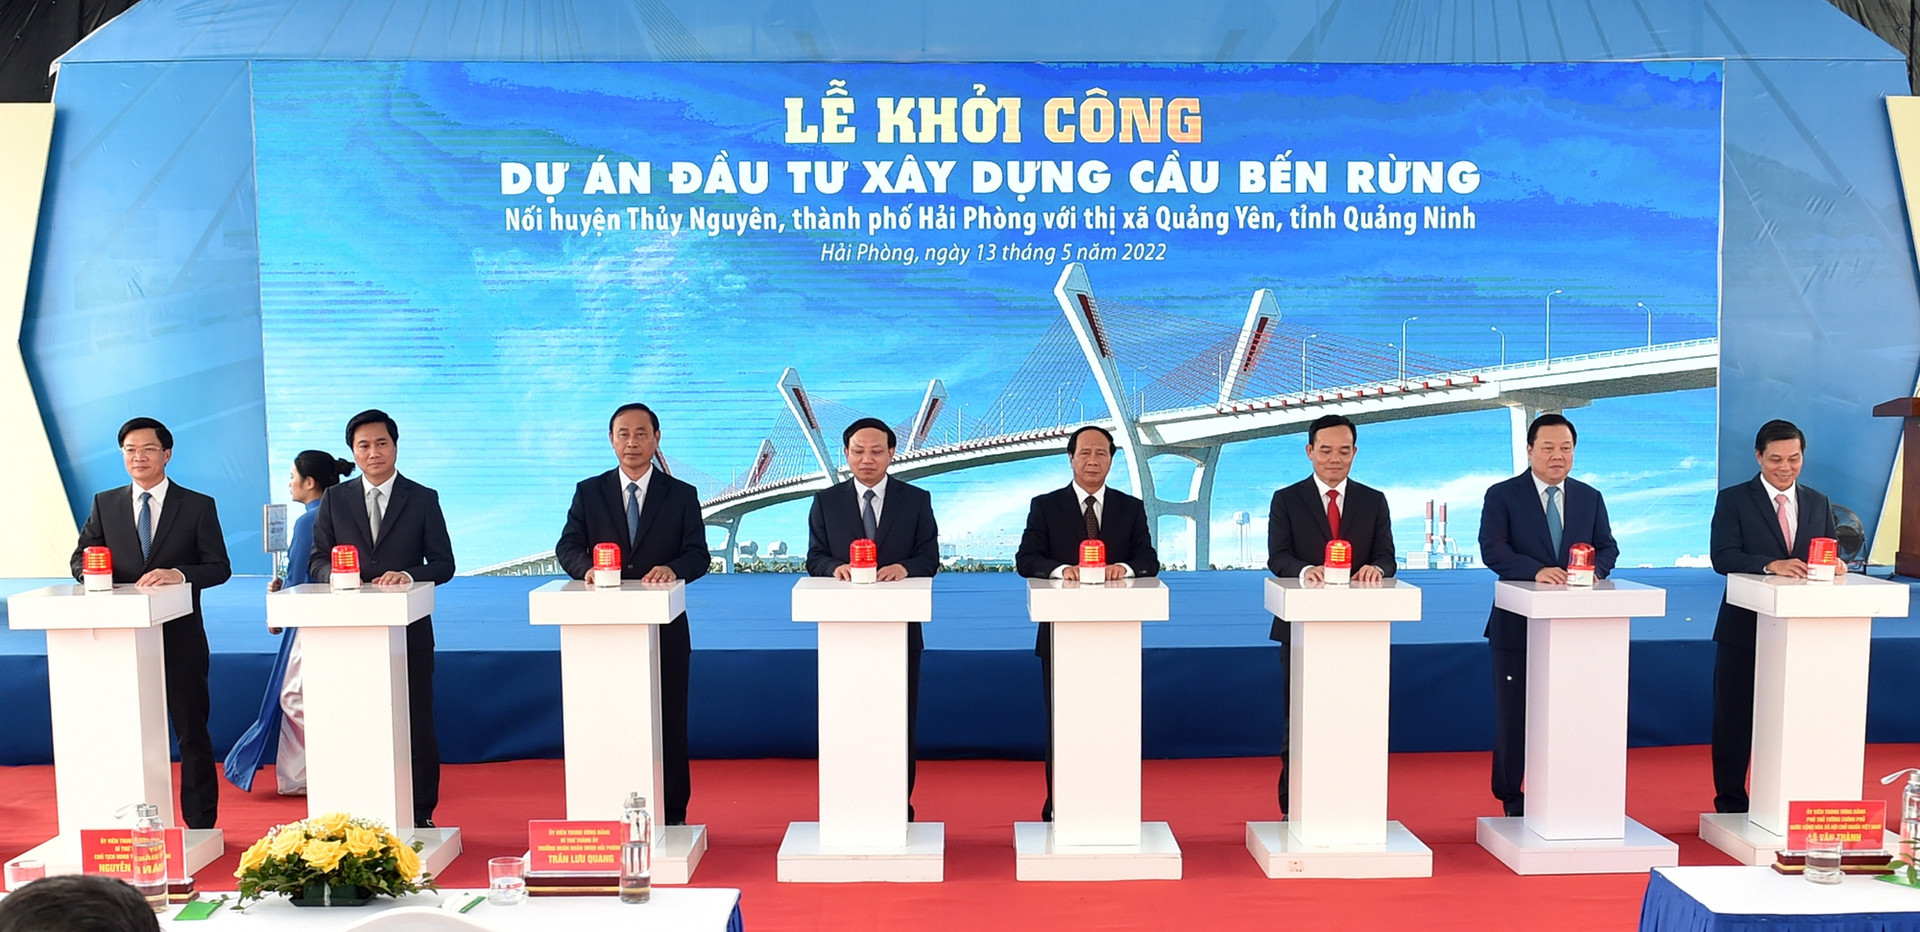 Phó Thủ tướng Lê Văn Thành bấm nút khởi công xây dựng cầu Bến Rừng, nối Hải Phòng với Quảng Ninh - Ảnh 3.